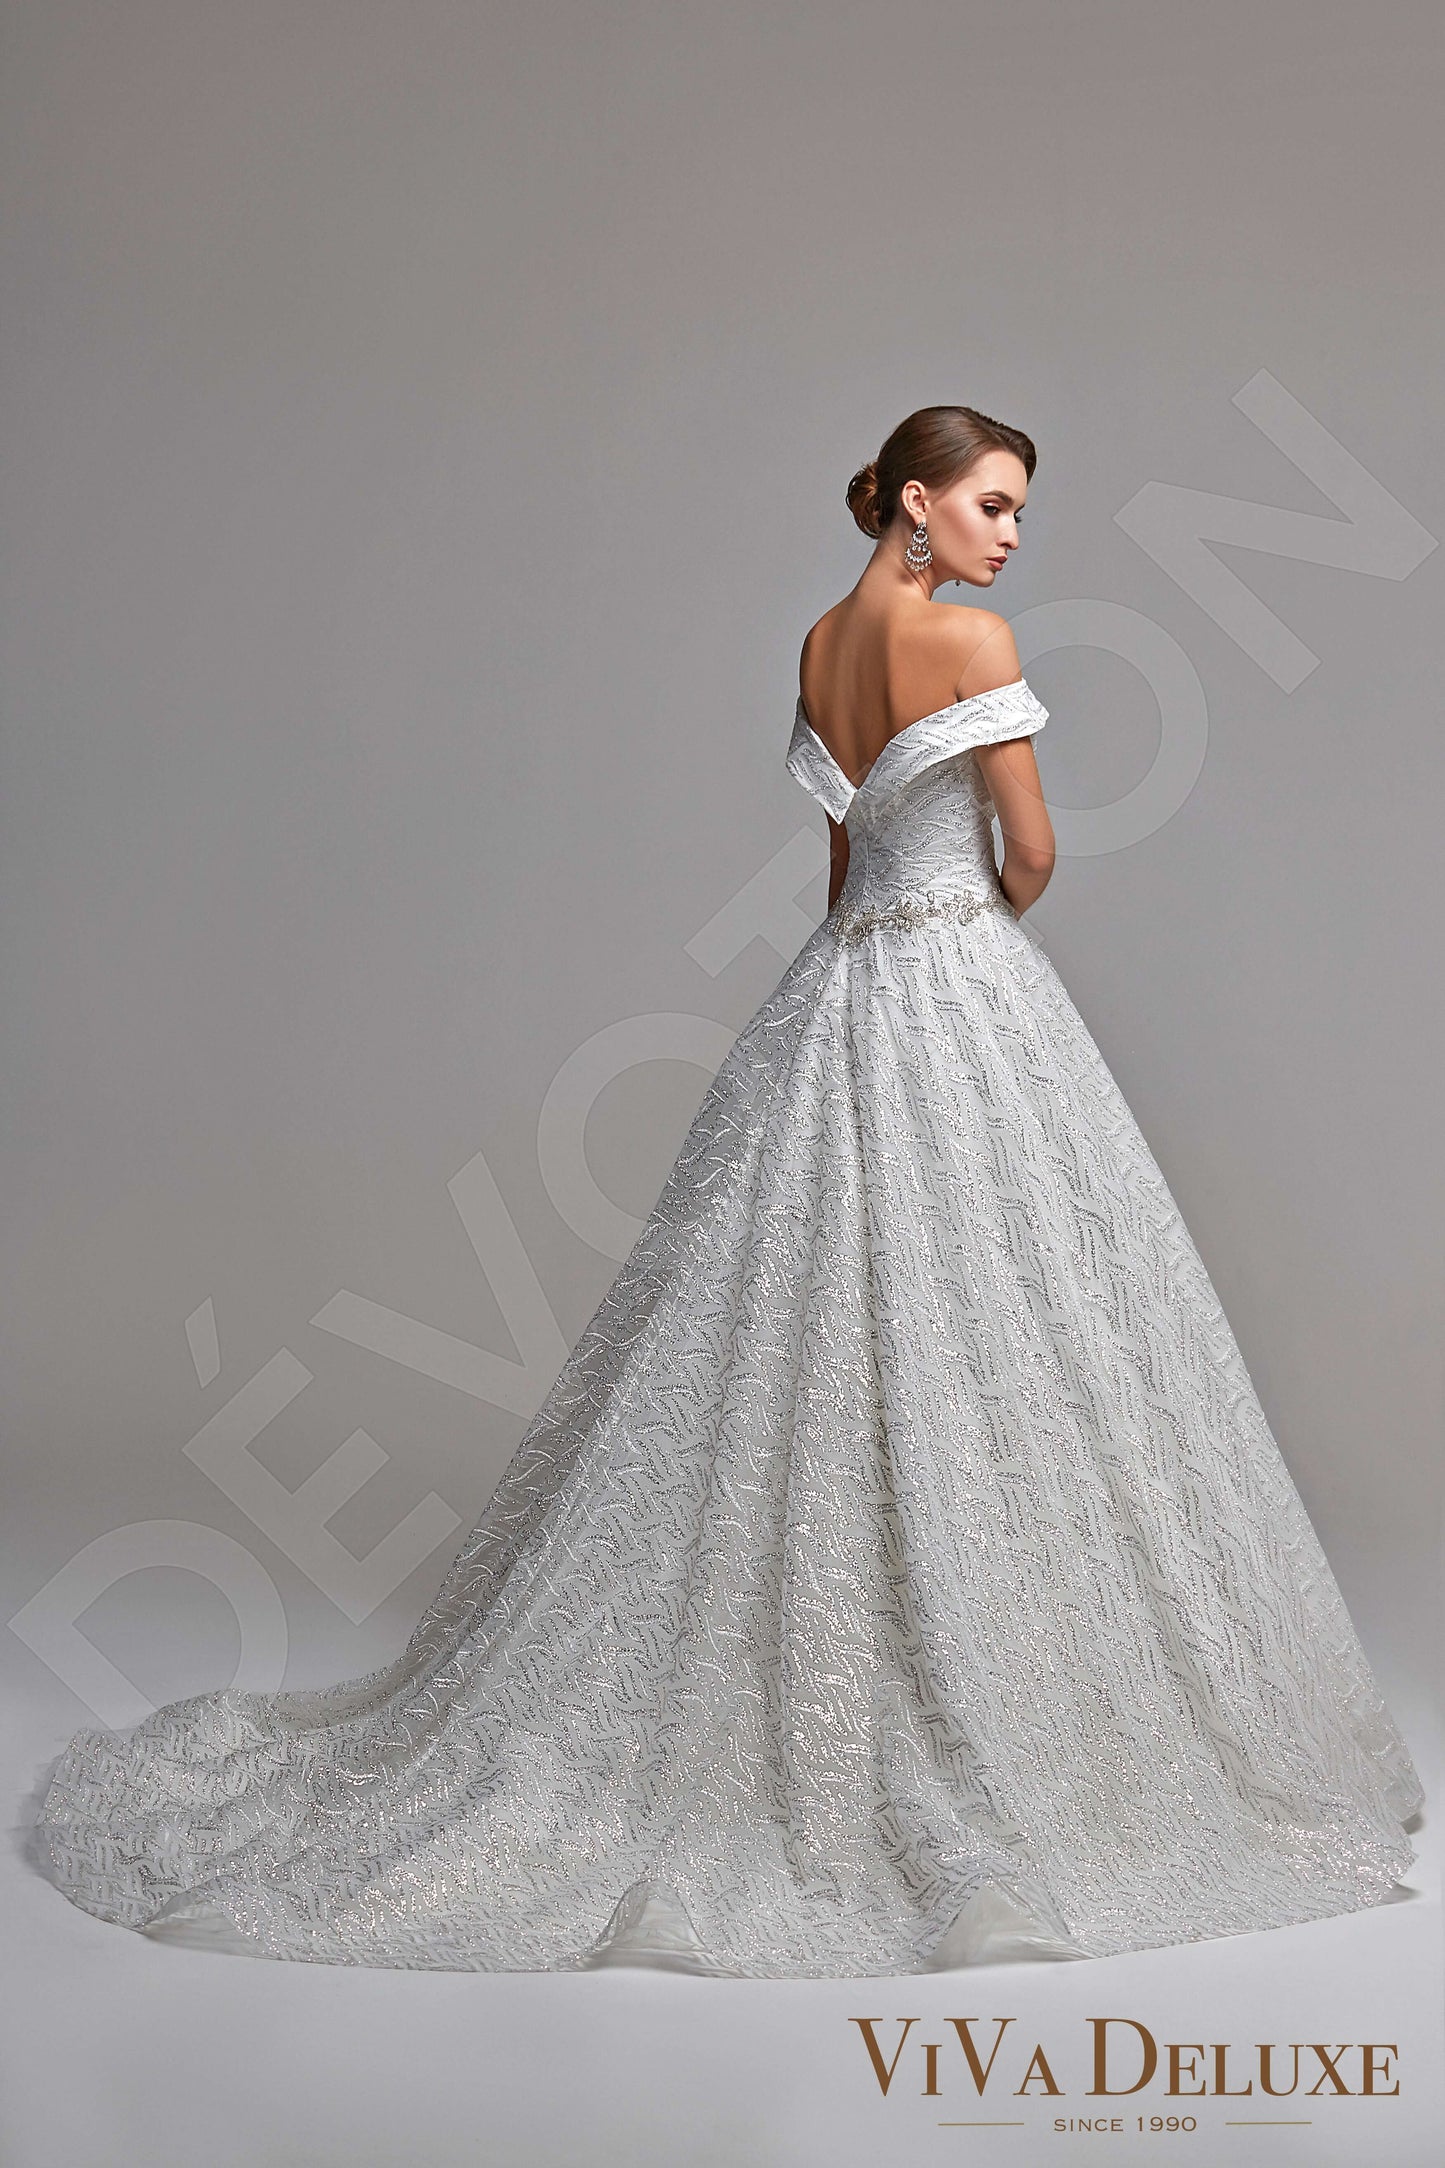 Perla Open back Princess/Ball Gown Sleeveless Wedding Dress 7